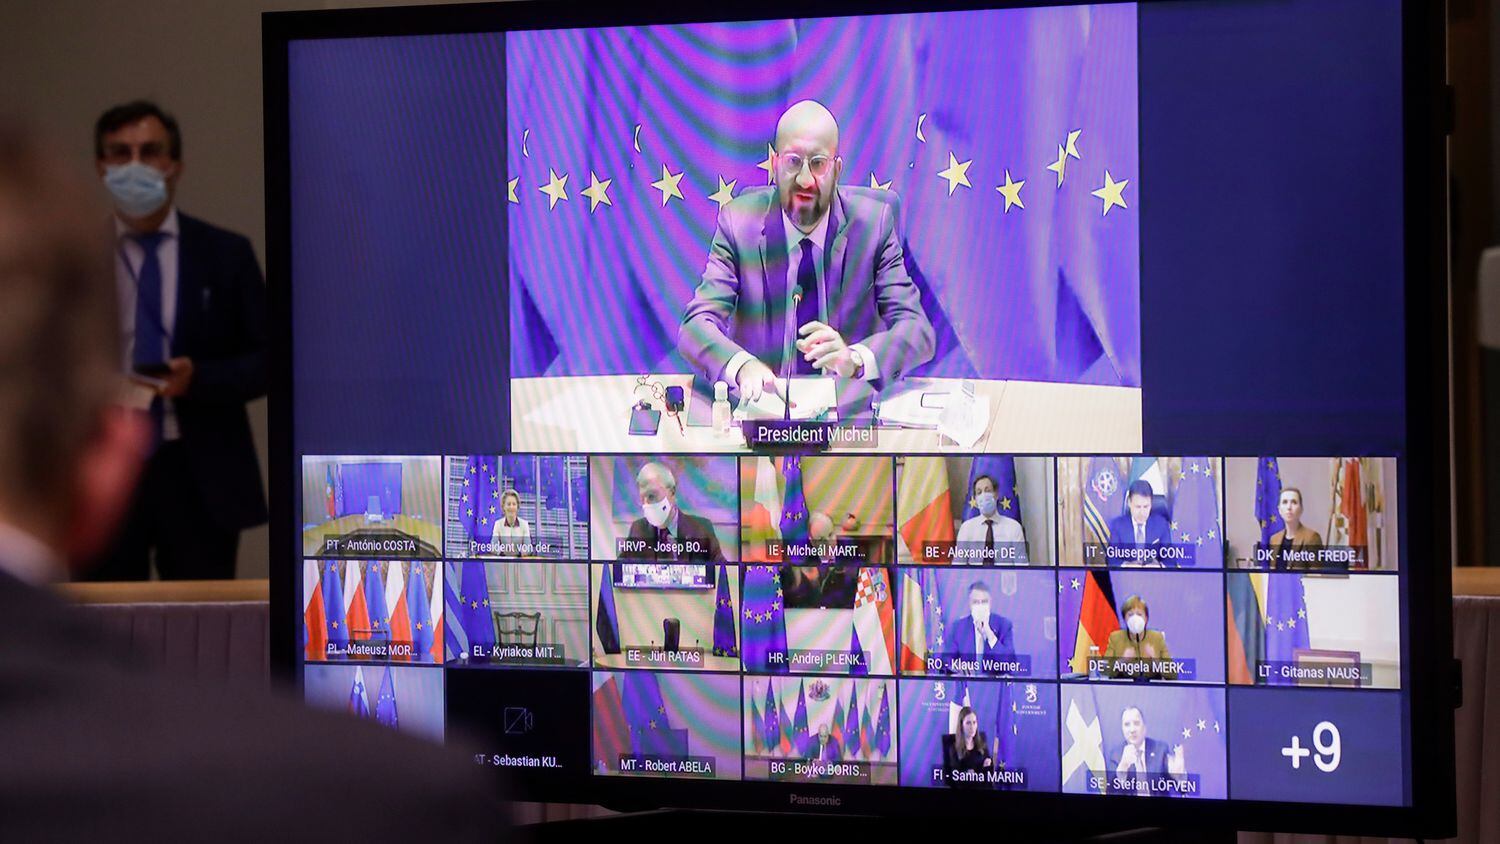 El presidente del Consejo Europeo, Charles Michel, en la videoconferencia que se celebró el 21 de enero sobre la covid-19 en Bruselas.